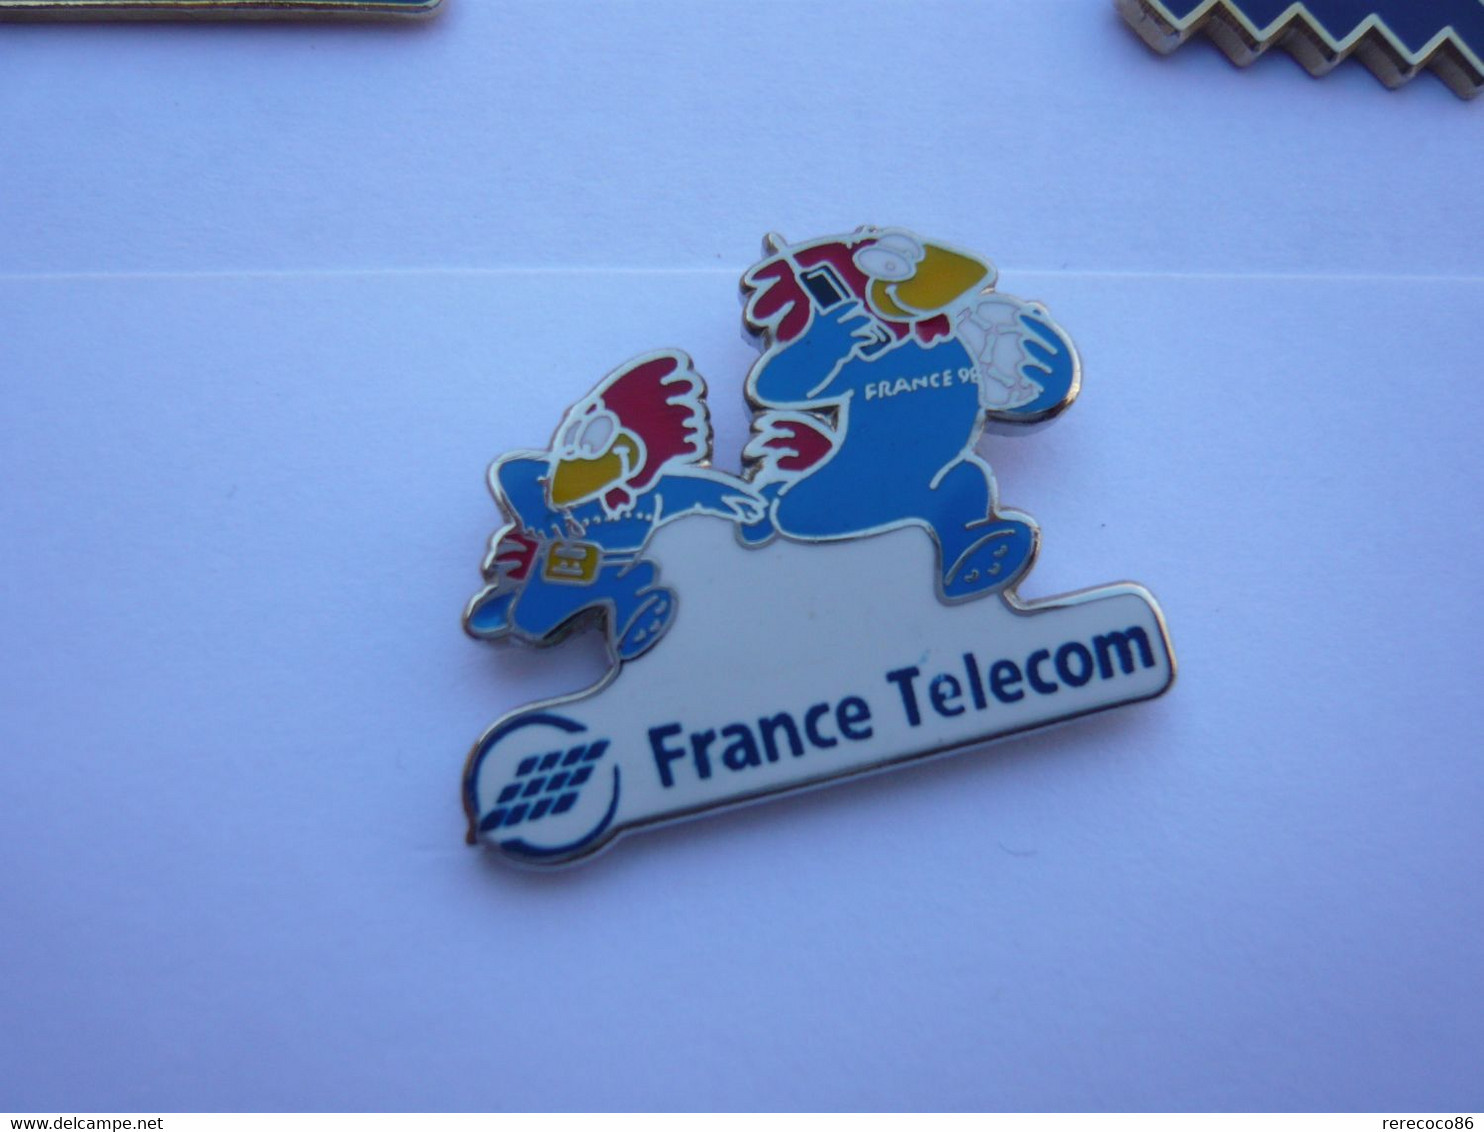 Pins FRANCE TELECOM FOOTBALL FRANCE 98 - France Télécom